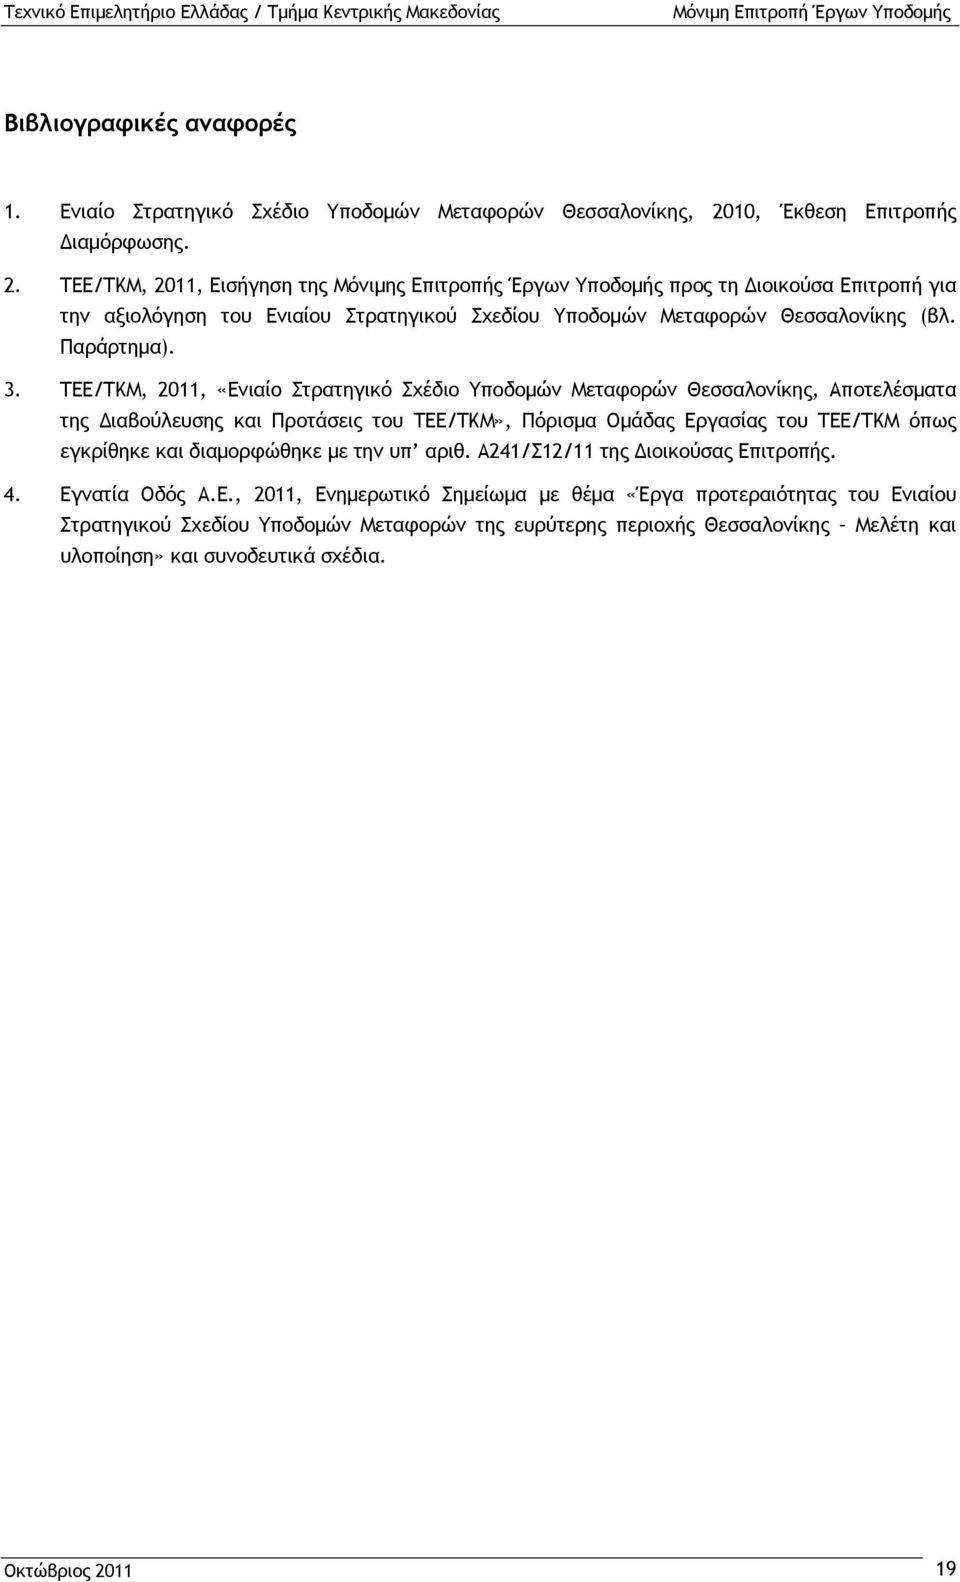 ΤΕΕ/ΤΚΜ, 2011, Εισήγηση της Μόνιμης Επιτροπής Έργων Υποδομής προς τη Διοικούσα Επιτροπή για την αξιολόγηση του Ενιαίου Στρατηγικού Σχεδίου Υποδομών Μεταφορών Θεσσαλονίκης (βλ. Παράρτημα). 3.